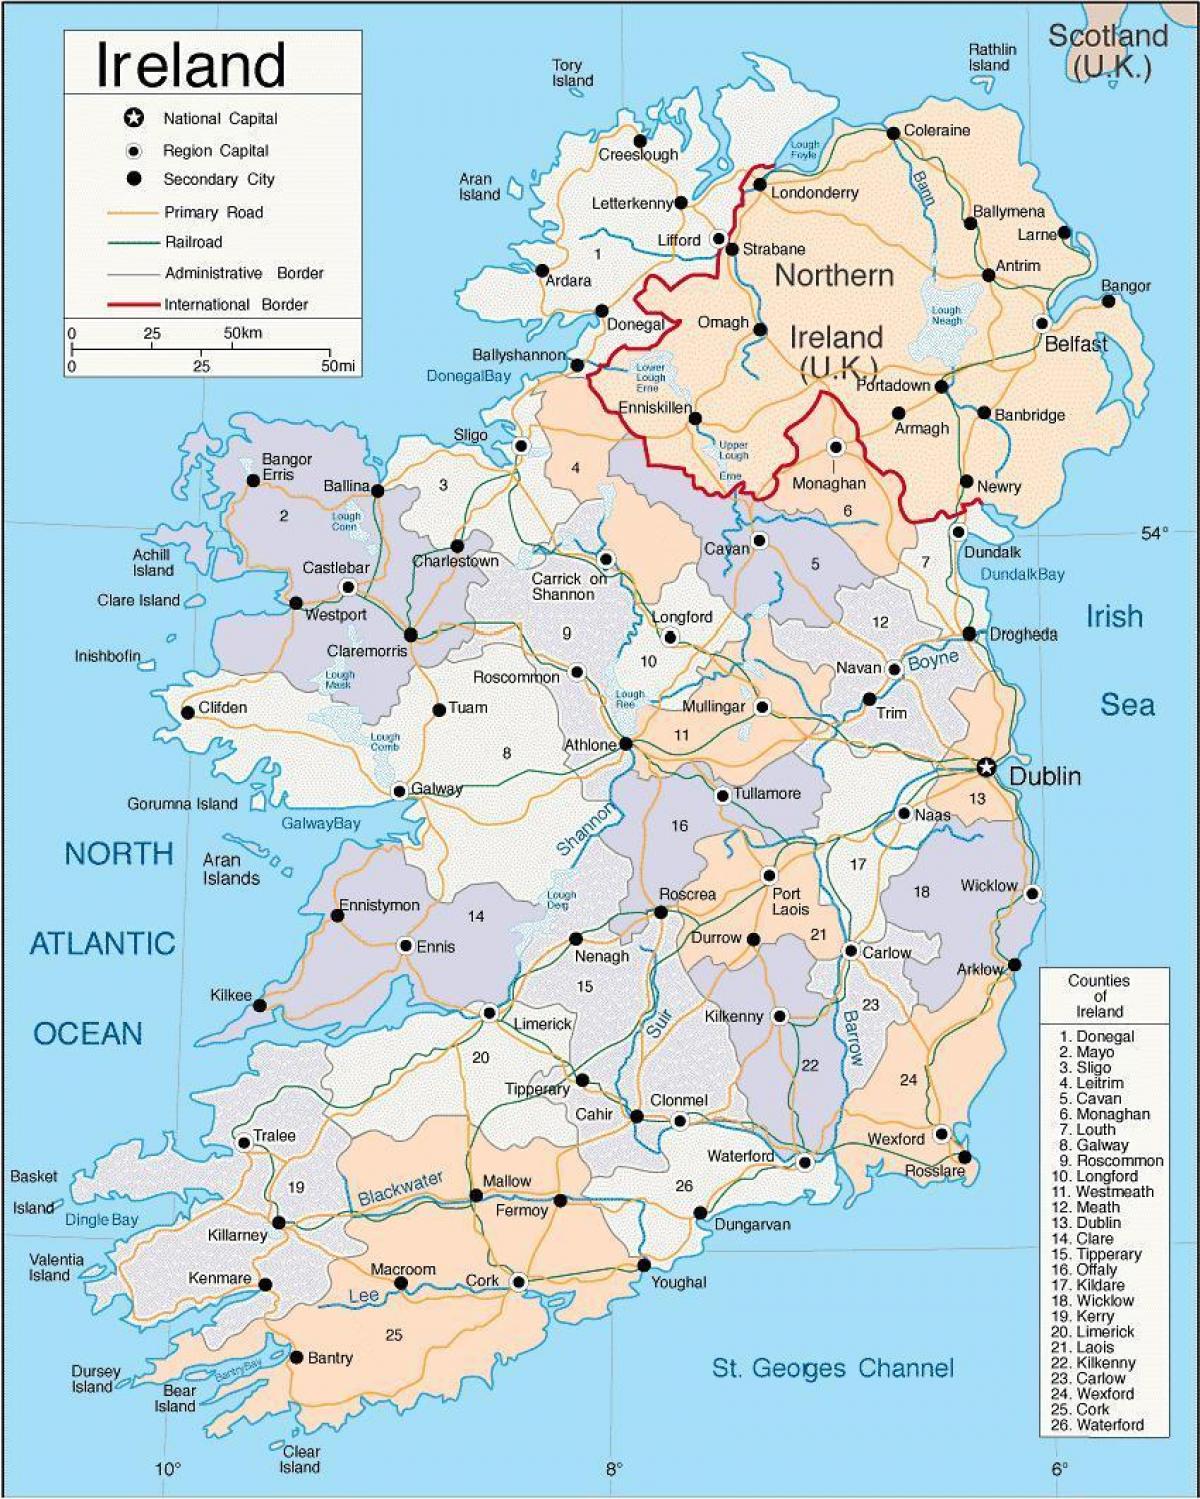 नक्शा आयरलैंड के दिखा शहरों